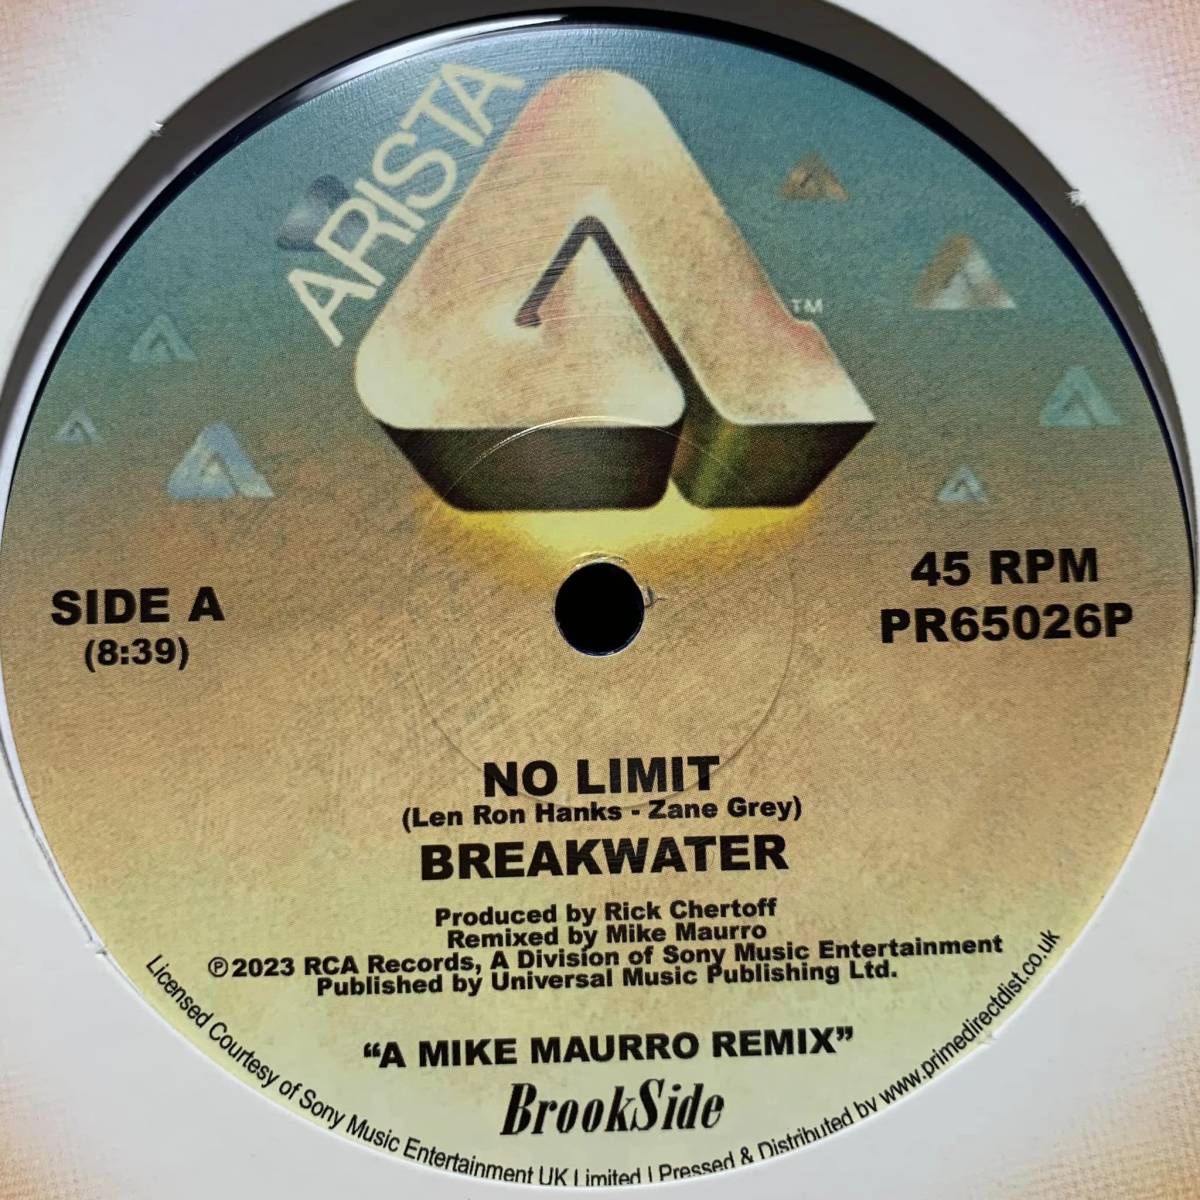 新品!!◆ Breakwater - No Limit (A Mike Maurro Remix) 8:39分◆12inch UK盤 の画像1